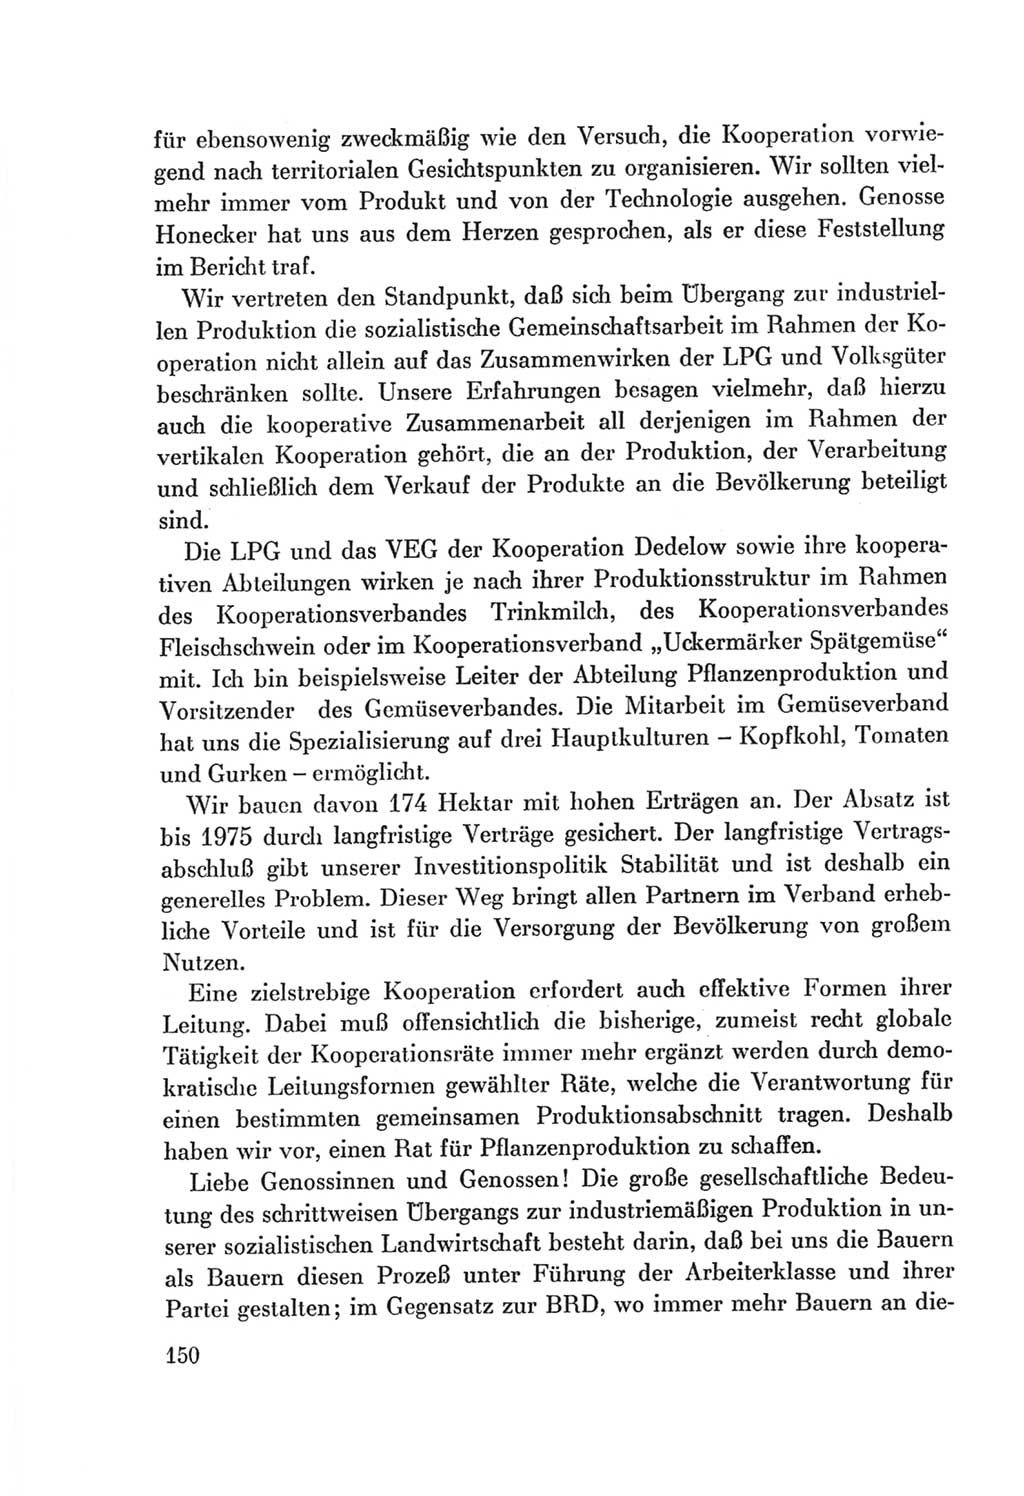 Protokoll der Verhandlungen des Ⅷ. Parteitages der Sozialistischen Einheitspartei Deutschlands (SED) [Deutsche Demokratische Republik (DDR)] 1971, Band 1, Seite 150 (Prot. Verh. Ⅷ. PT SED DDR 1971, Bd. 1, S. 150)